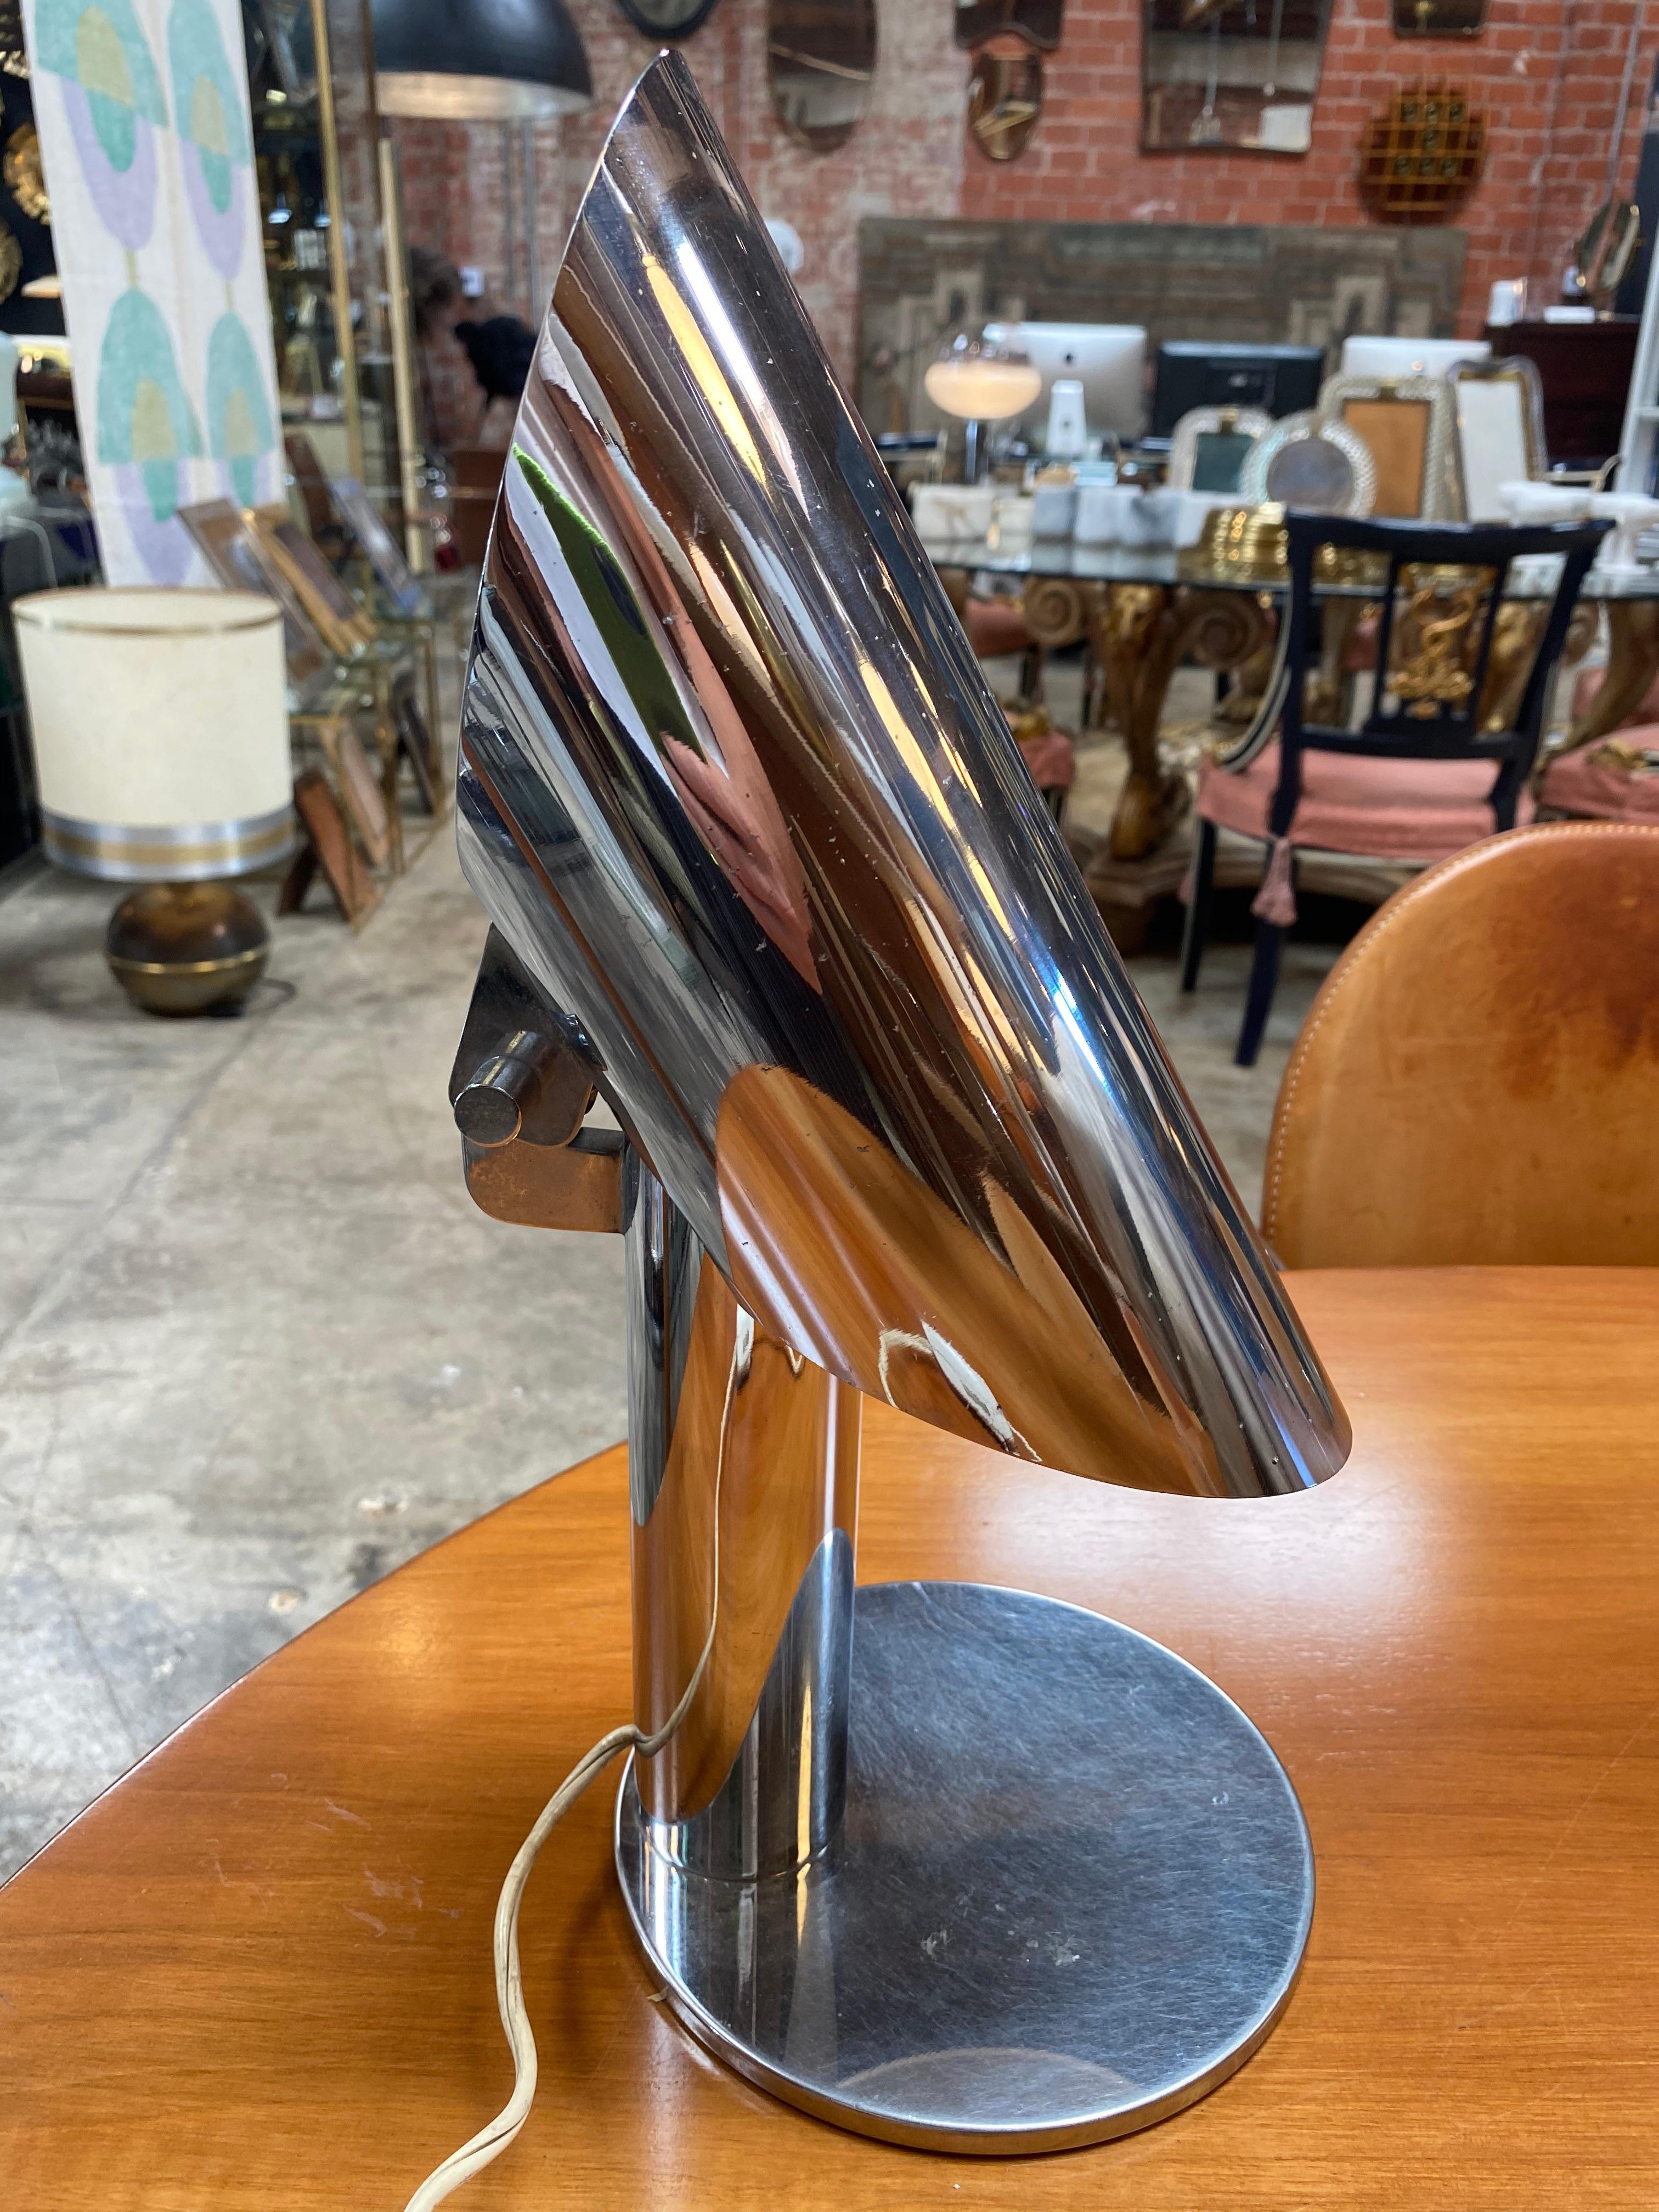 Italienische schwenkbare Tischleuchte von Arredoluce, Italien, 1970er Jahre.

Die Tischleuchte ist ganz aus Chrom mit einem innovativen Design und mit der Eigenschaft, schwenkbar zu sein, was ihr einen modernen Touch verleiht.
Die Lampe ist in